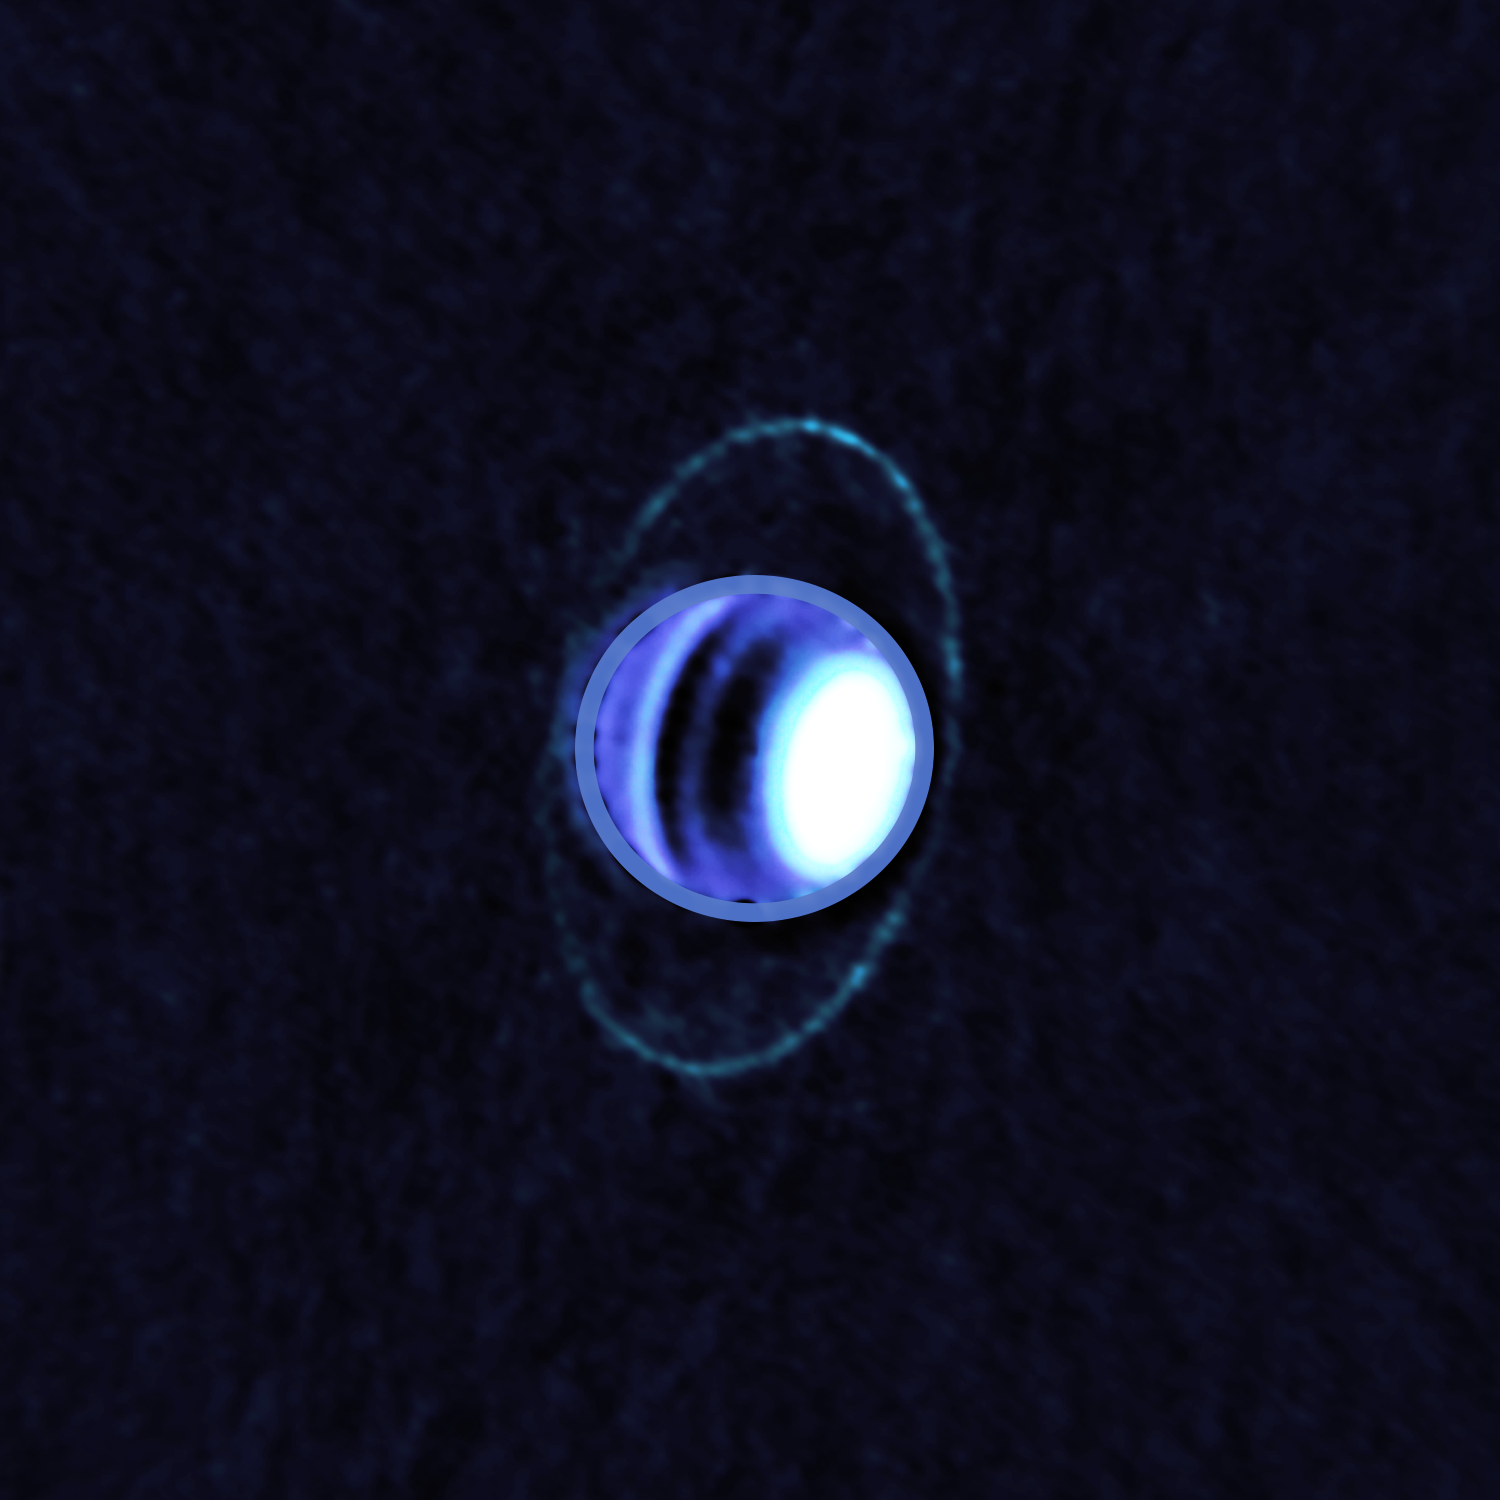 Planet Uranus has a rare blue ring